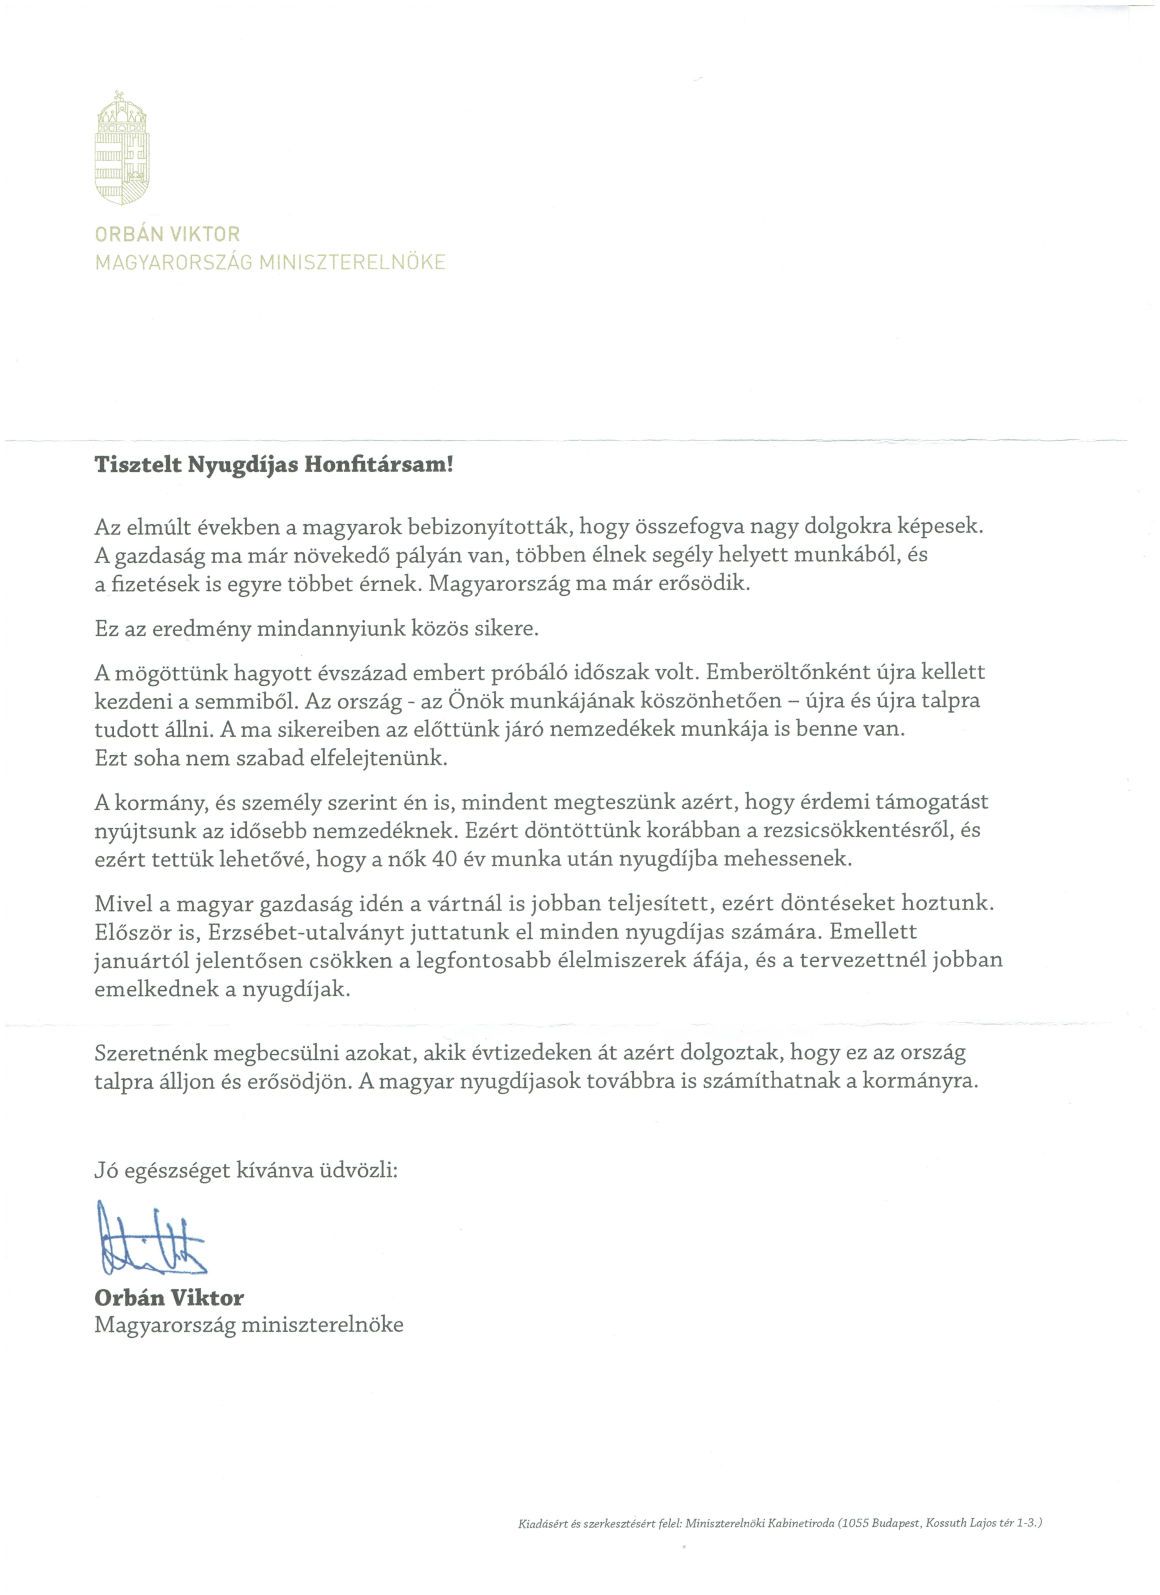 Íme Orbán levele – ezt küldte a nyugdíjasoknak